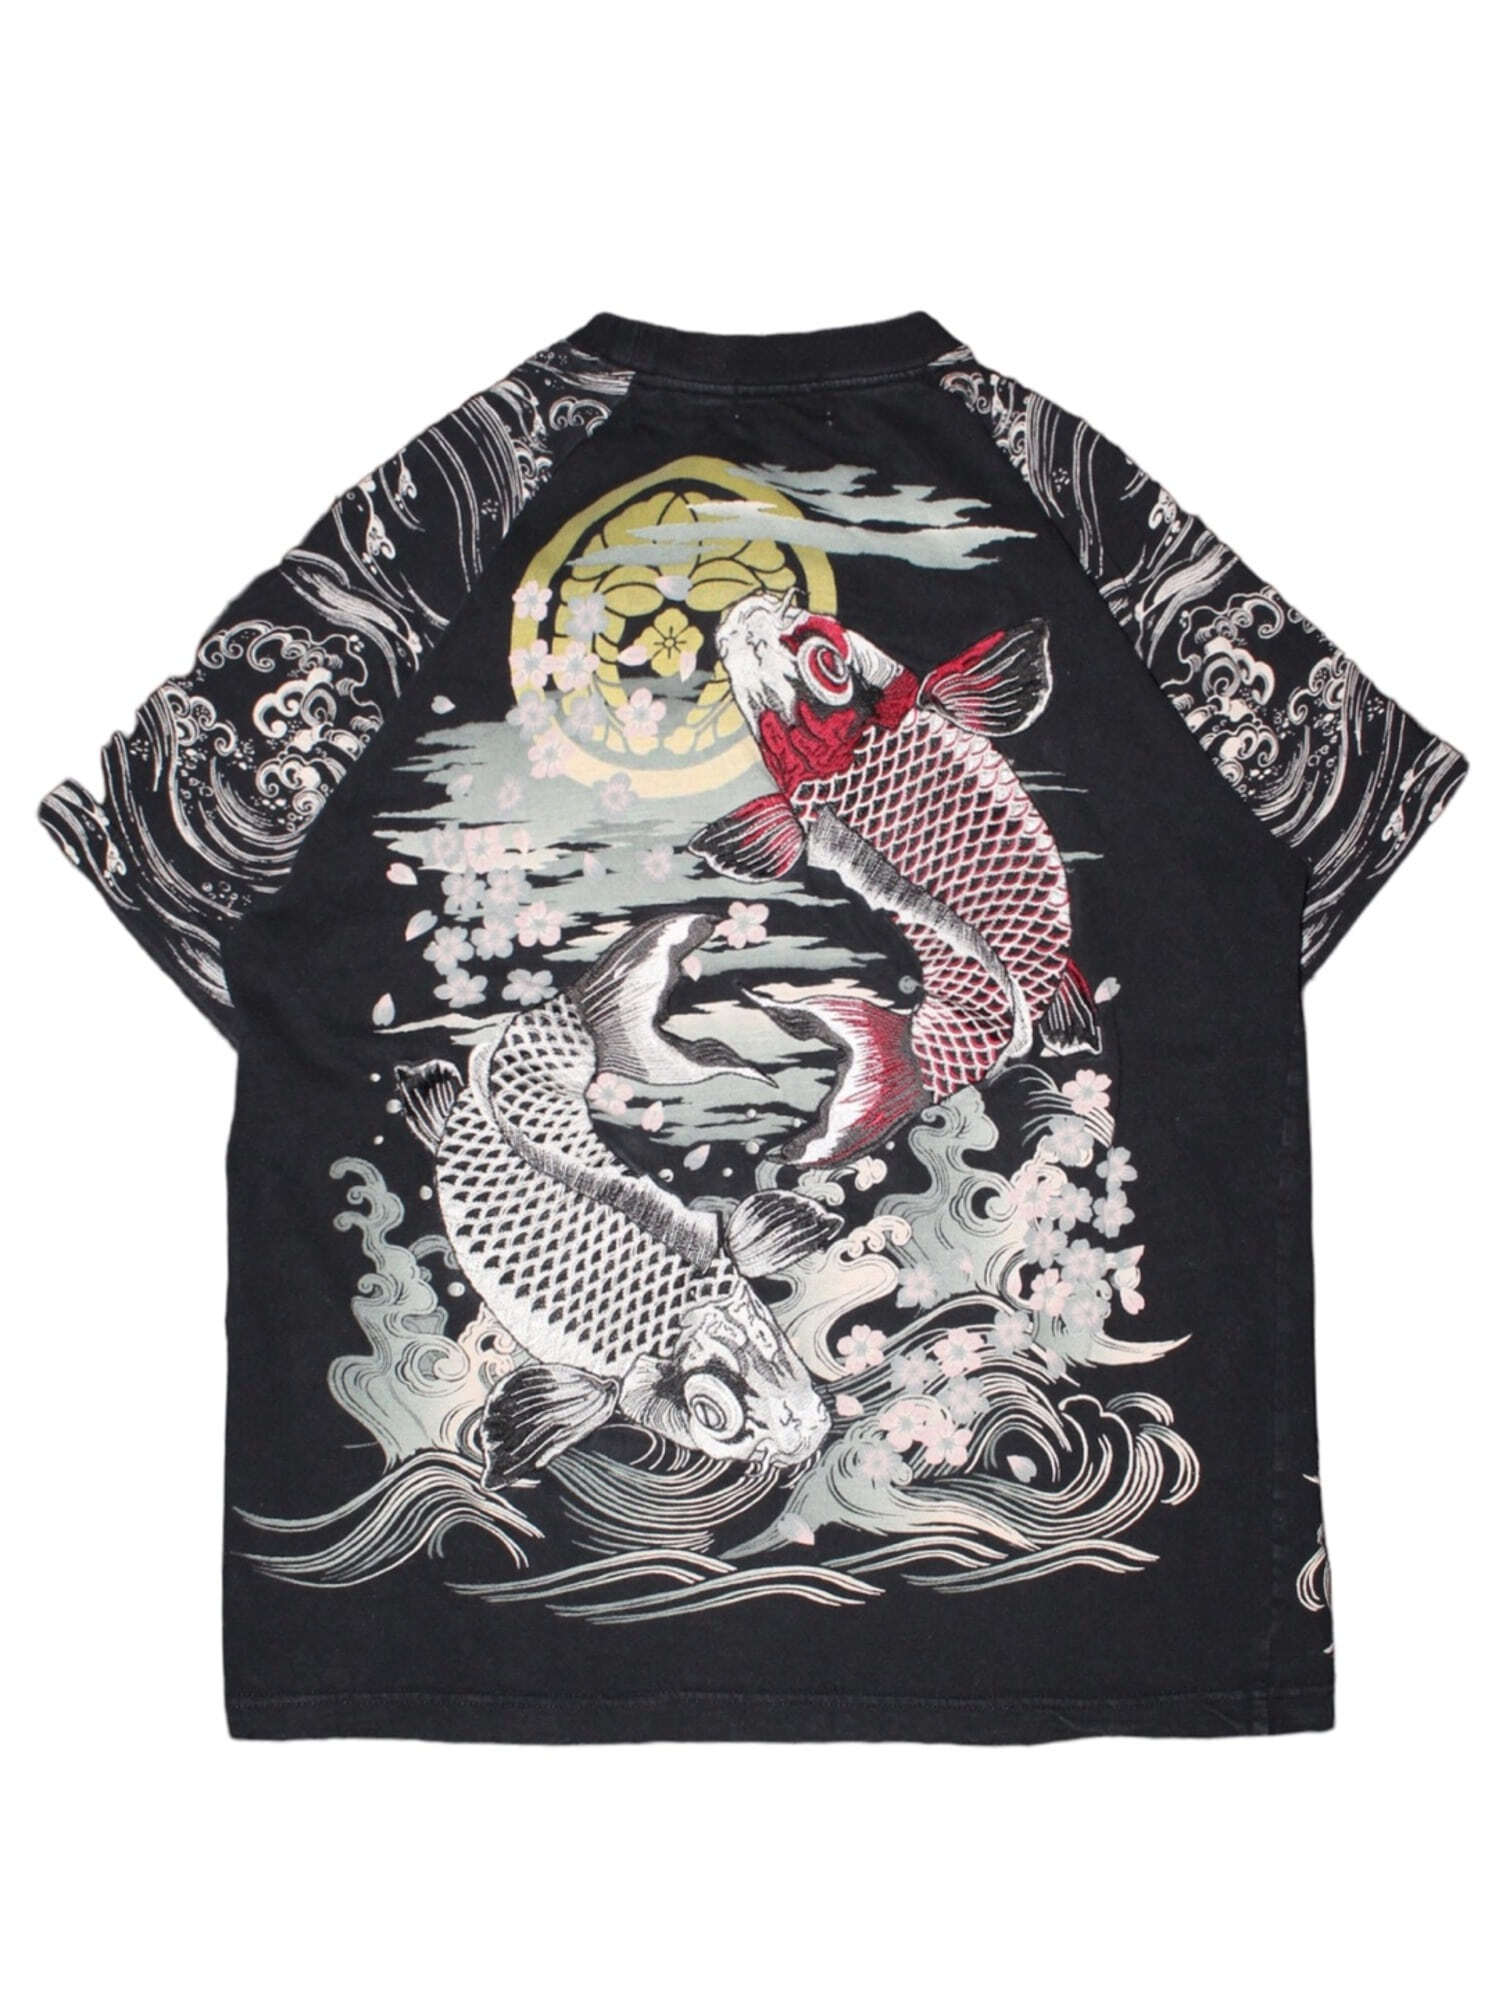 華鳥風月 화조풍월 Carp Embroidery Oriental T-shirt